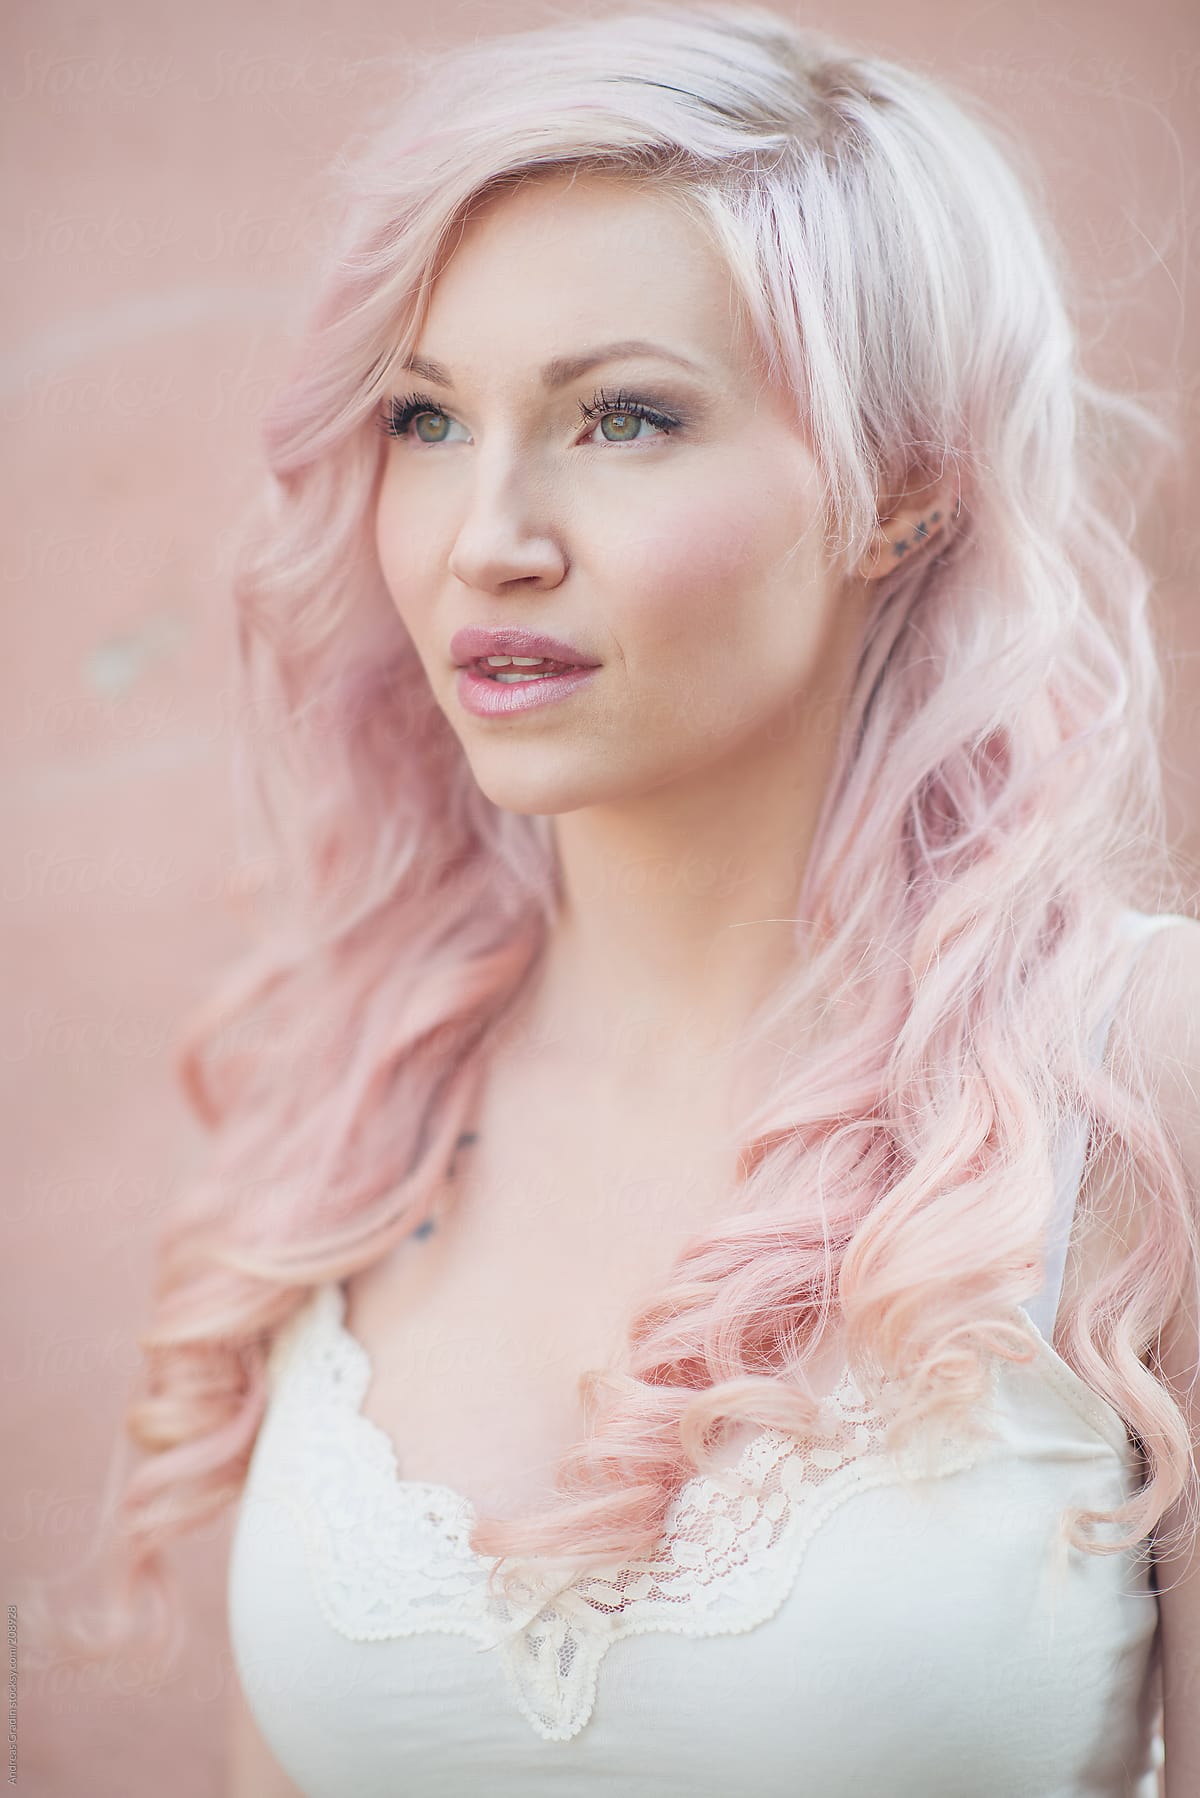 Popular Girl Pink & Blonde Hair